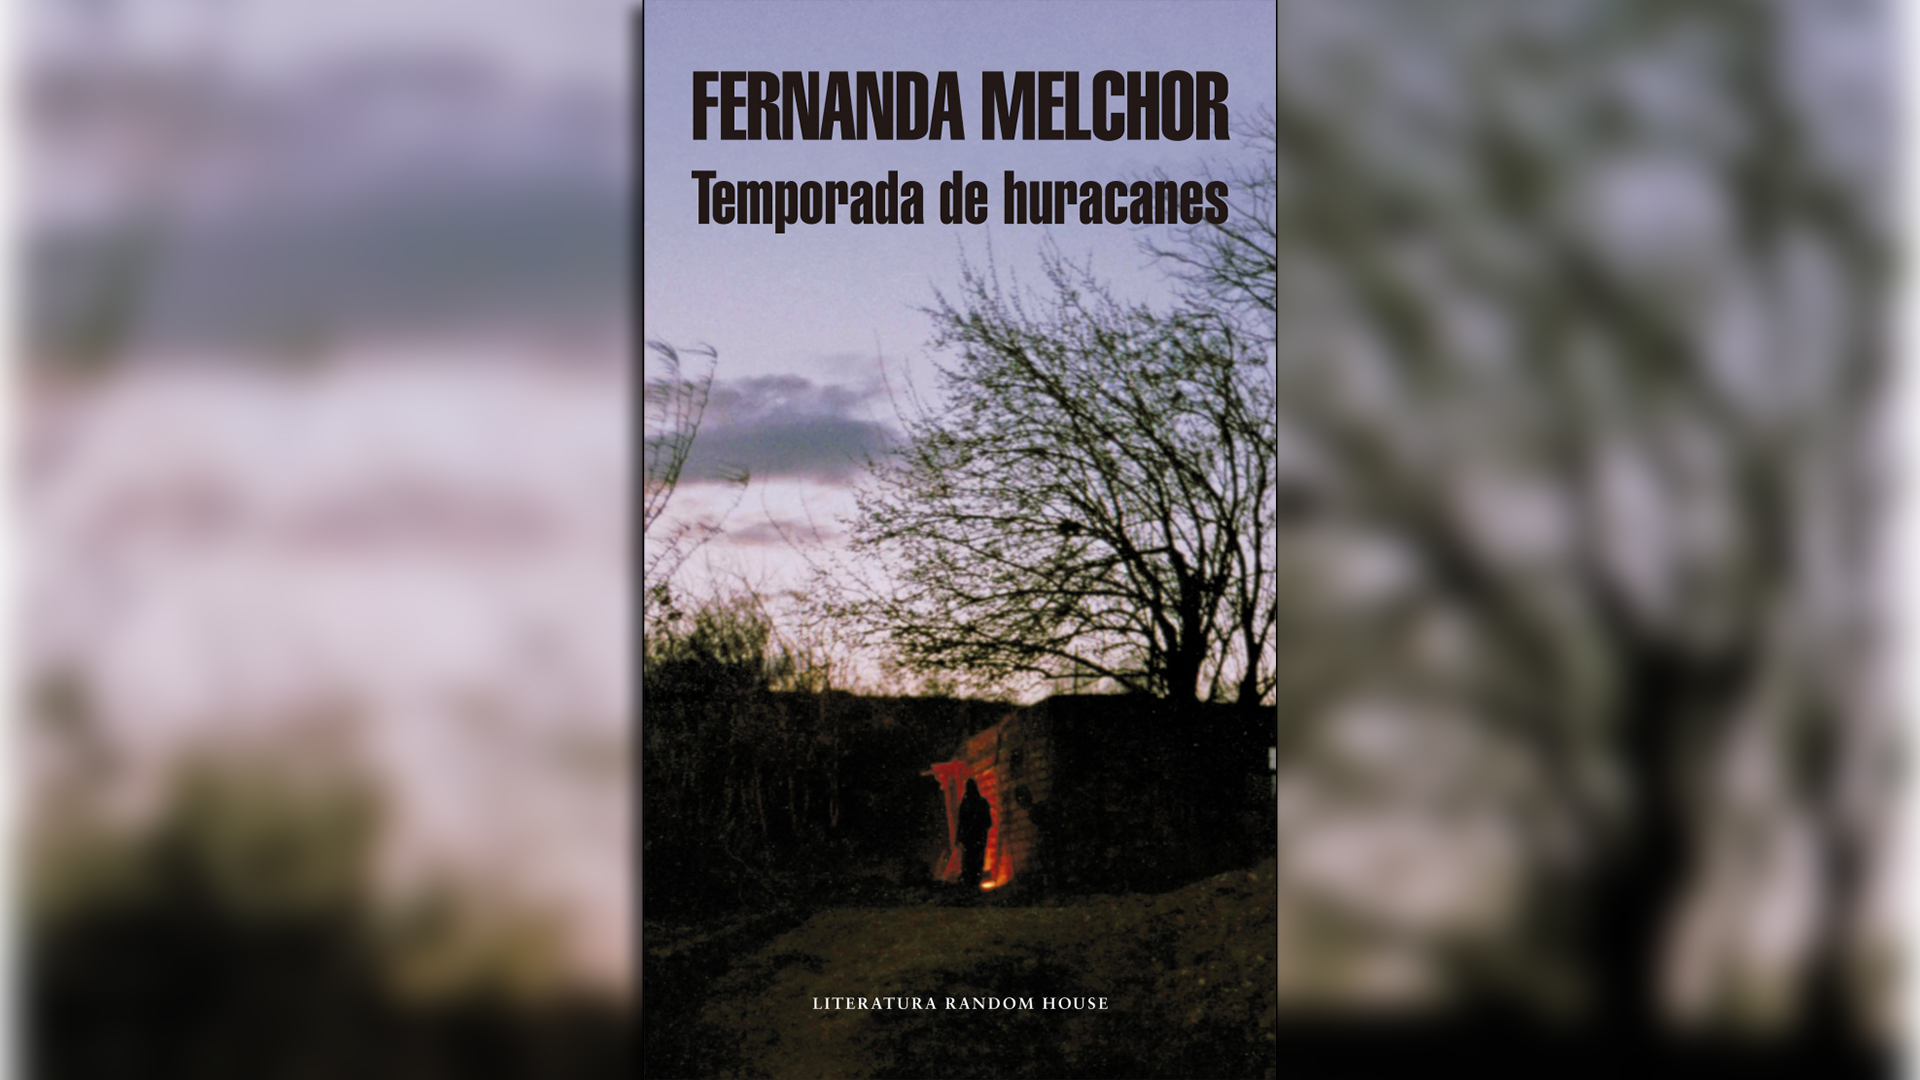 “Temporada de huracanes”: Netflix adaptará la novela sobre la violencia y la miseria escrita por la mexicana Fernanda Melchor